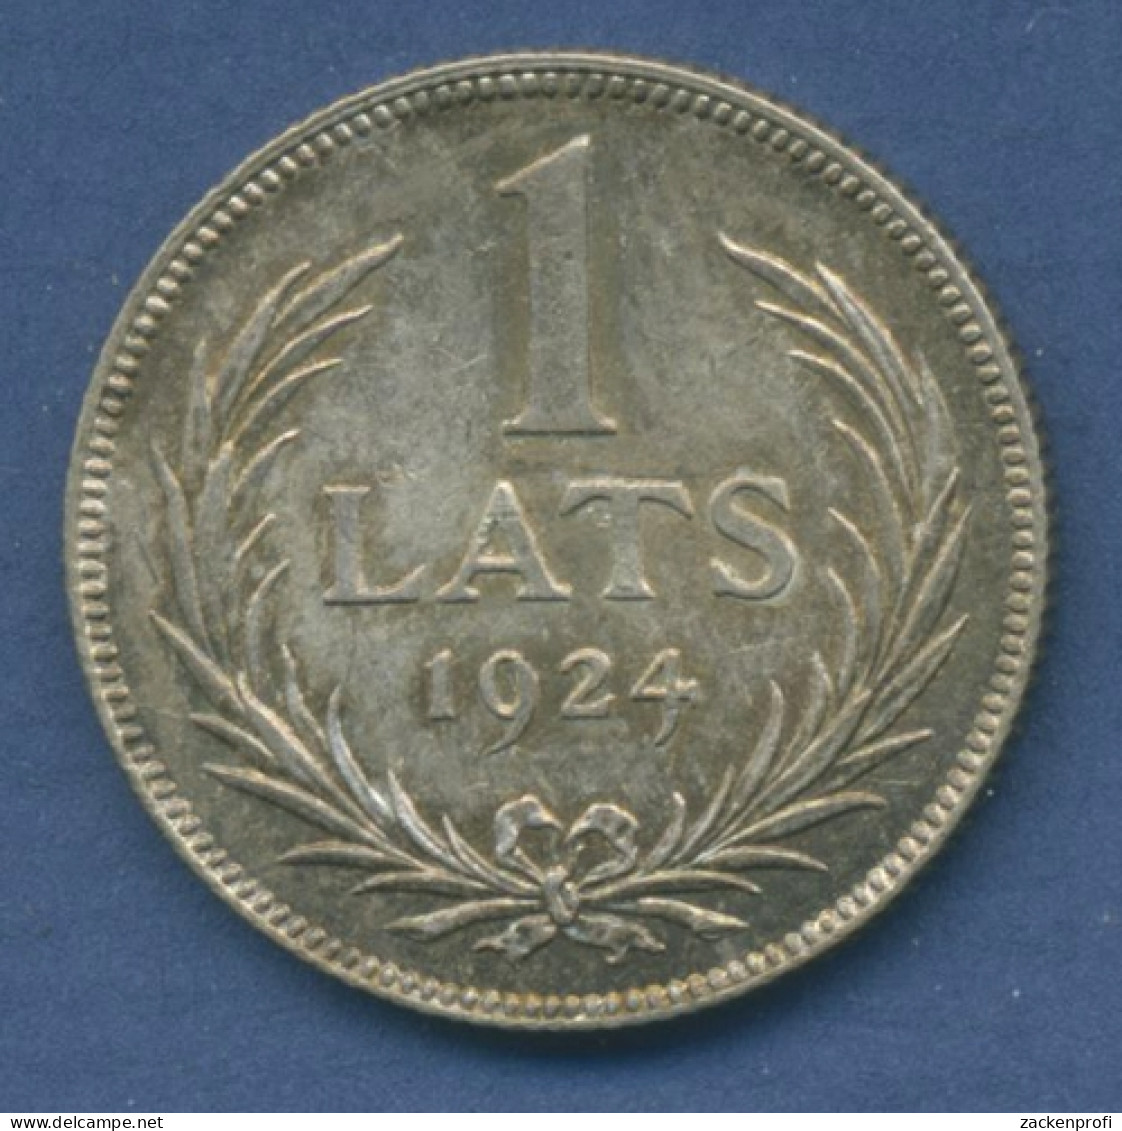 Lettland 1 Lats 1924, Kursmünze Silber, Vz/st (m1632) - Lettonie